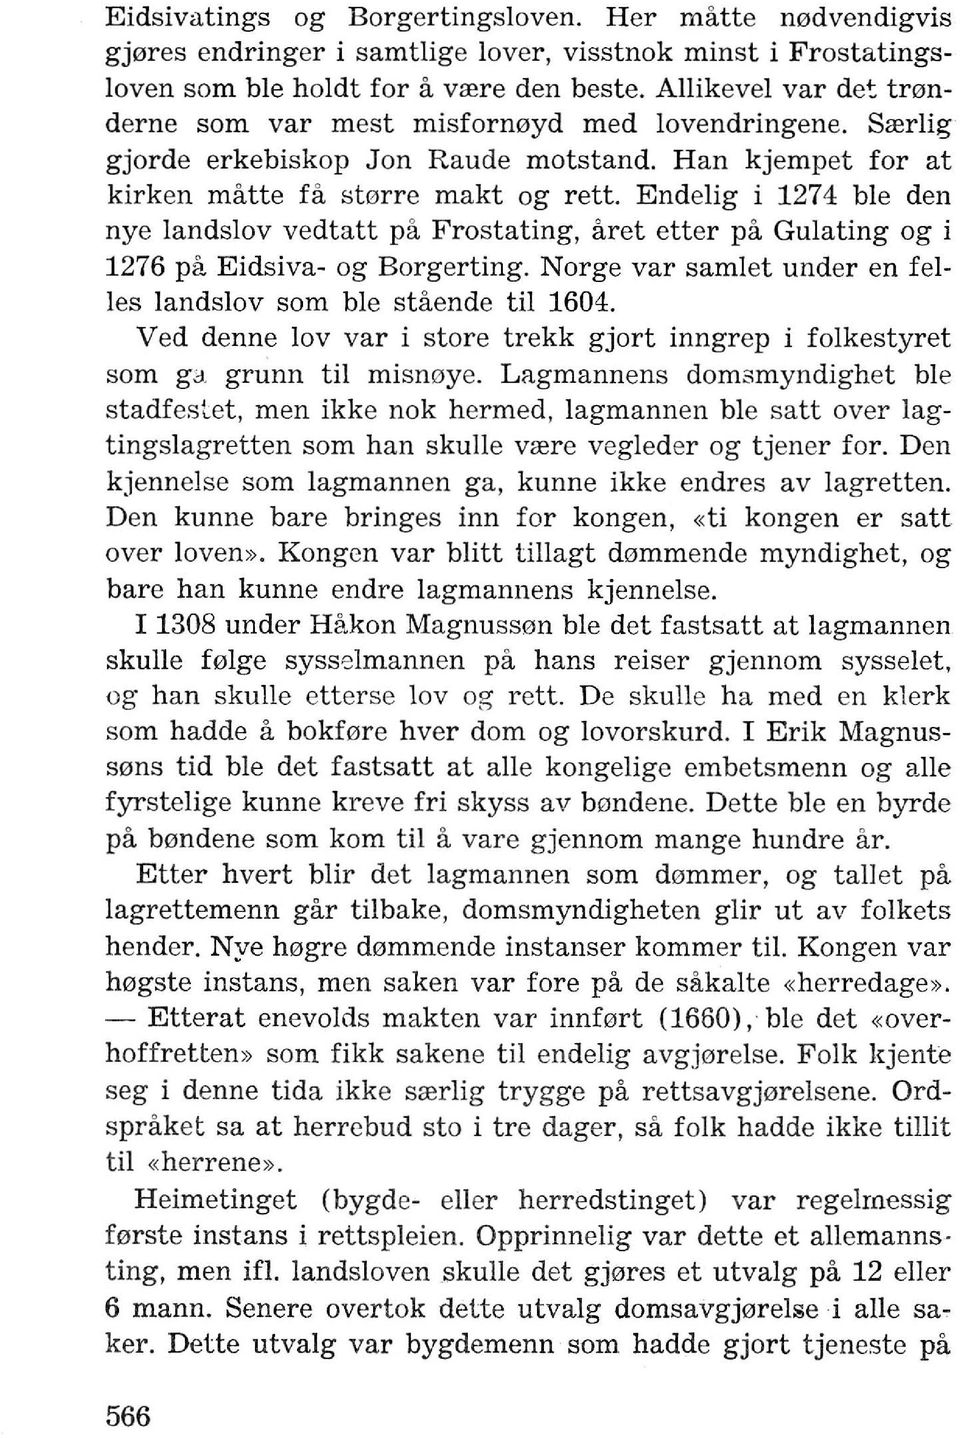 Endelig i 1274 ble den nye landslov vedtatt pa Frostating, aret etter pa Gulating og i 1276 pa Eidsiva- og Borgerting. Norge var samlet under en fei Ies Iandslov som ble staende til 1604.